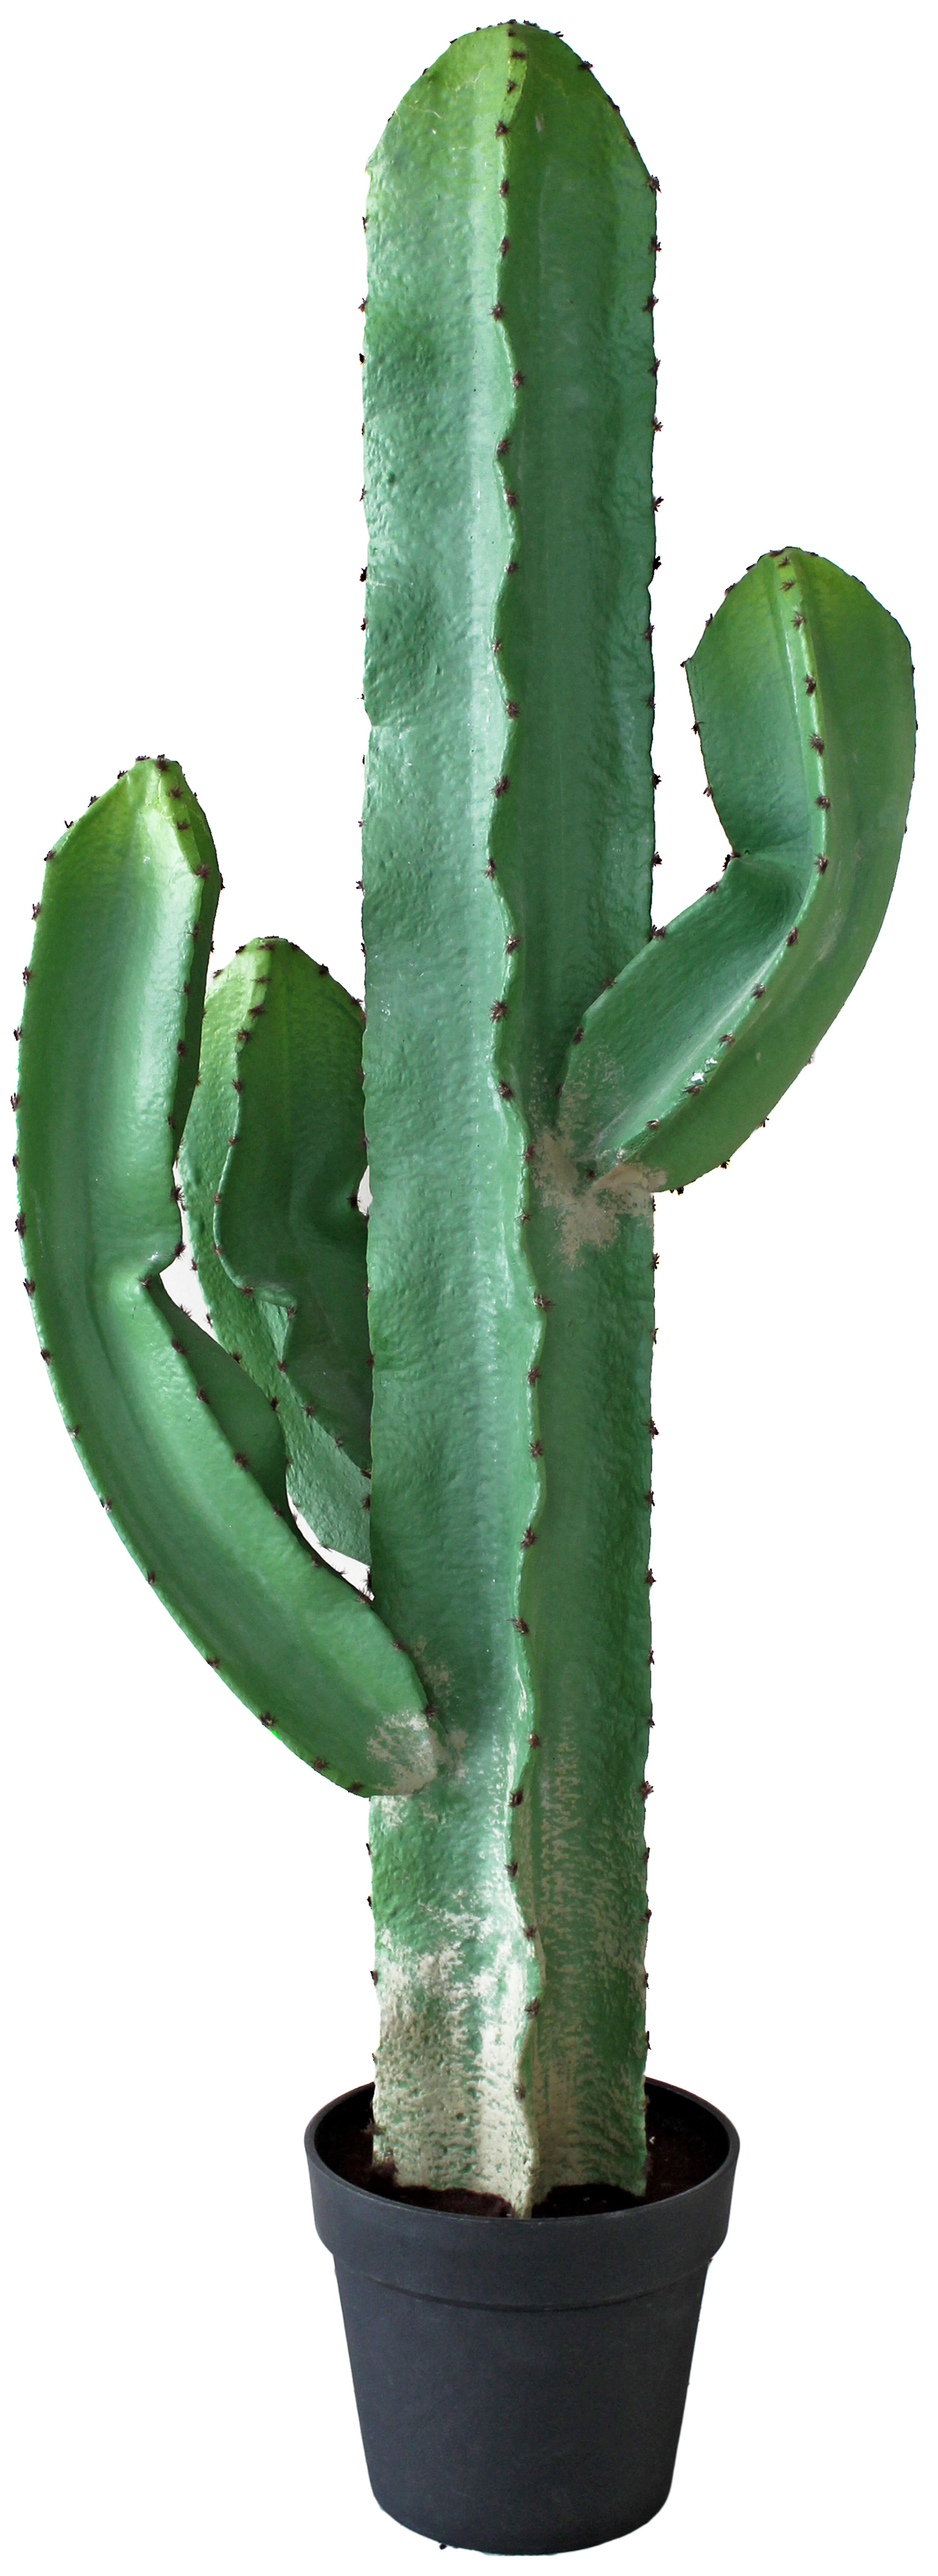 Planta artificial cactus 110 cm en maceta de 12 cm